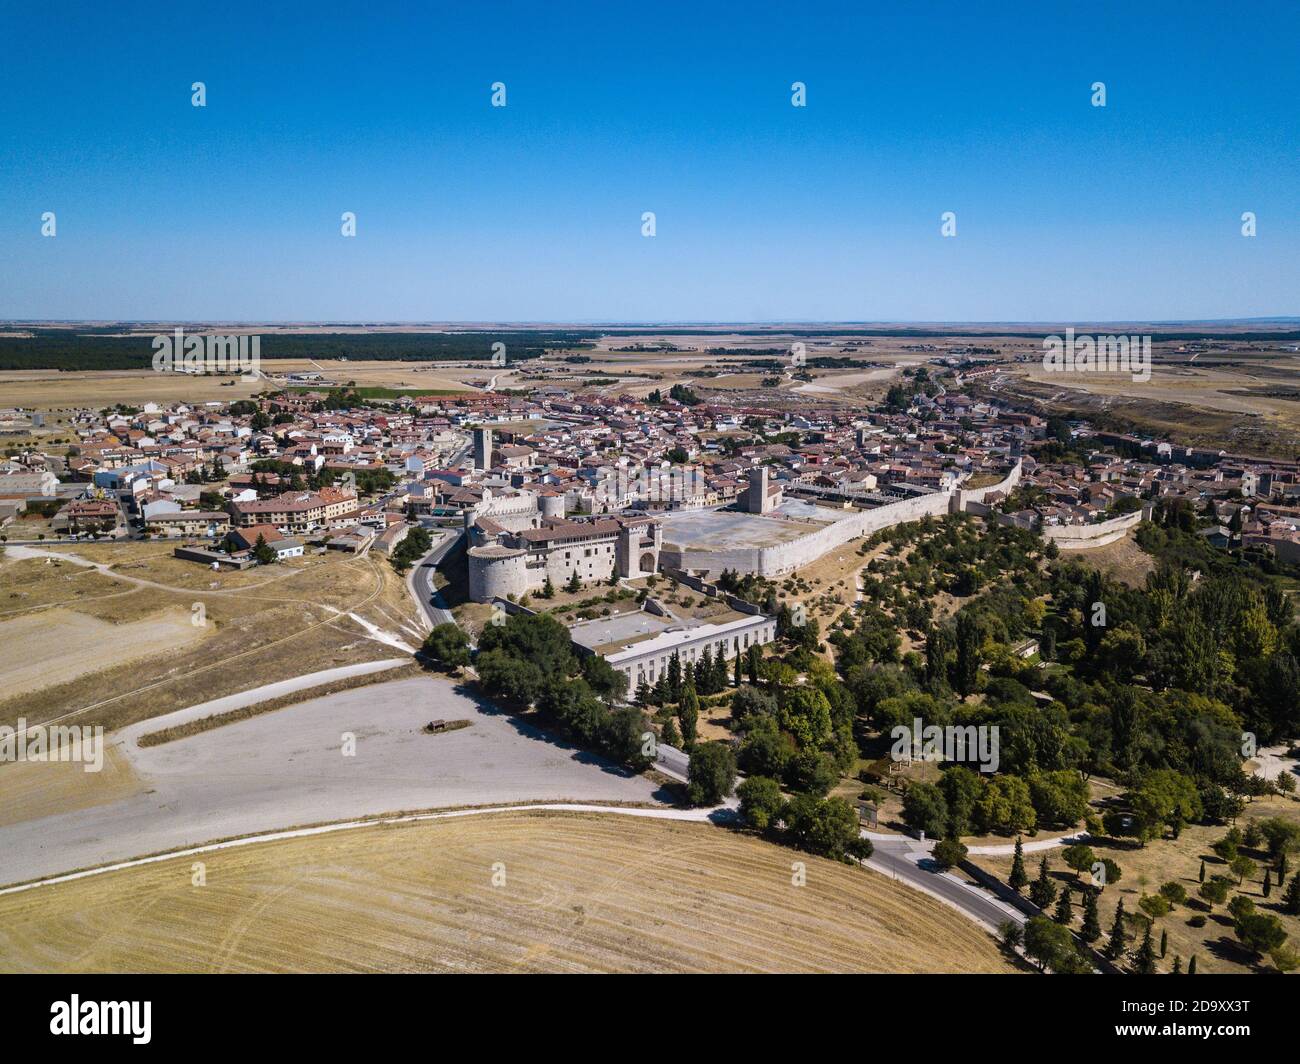 Vista aerea di Cuellar, un piccolo centro storico in provincia di Segovia, con il castello ricostruito in primo piano. Foto Stock